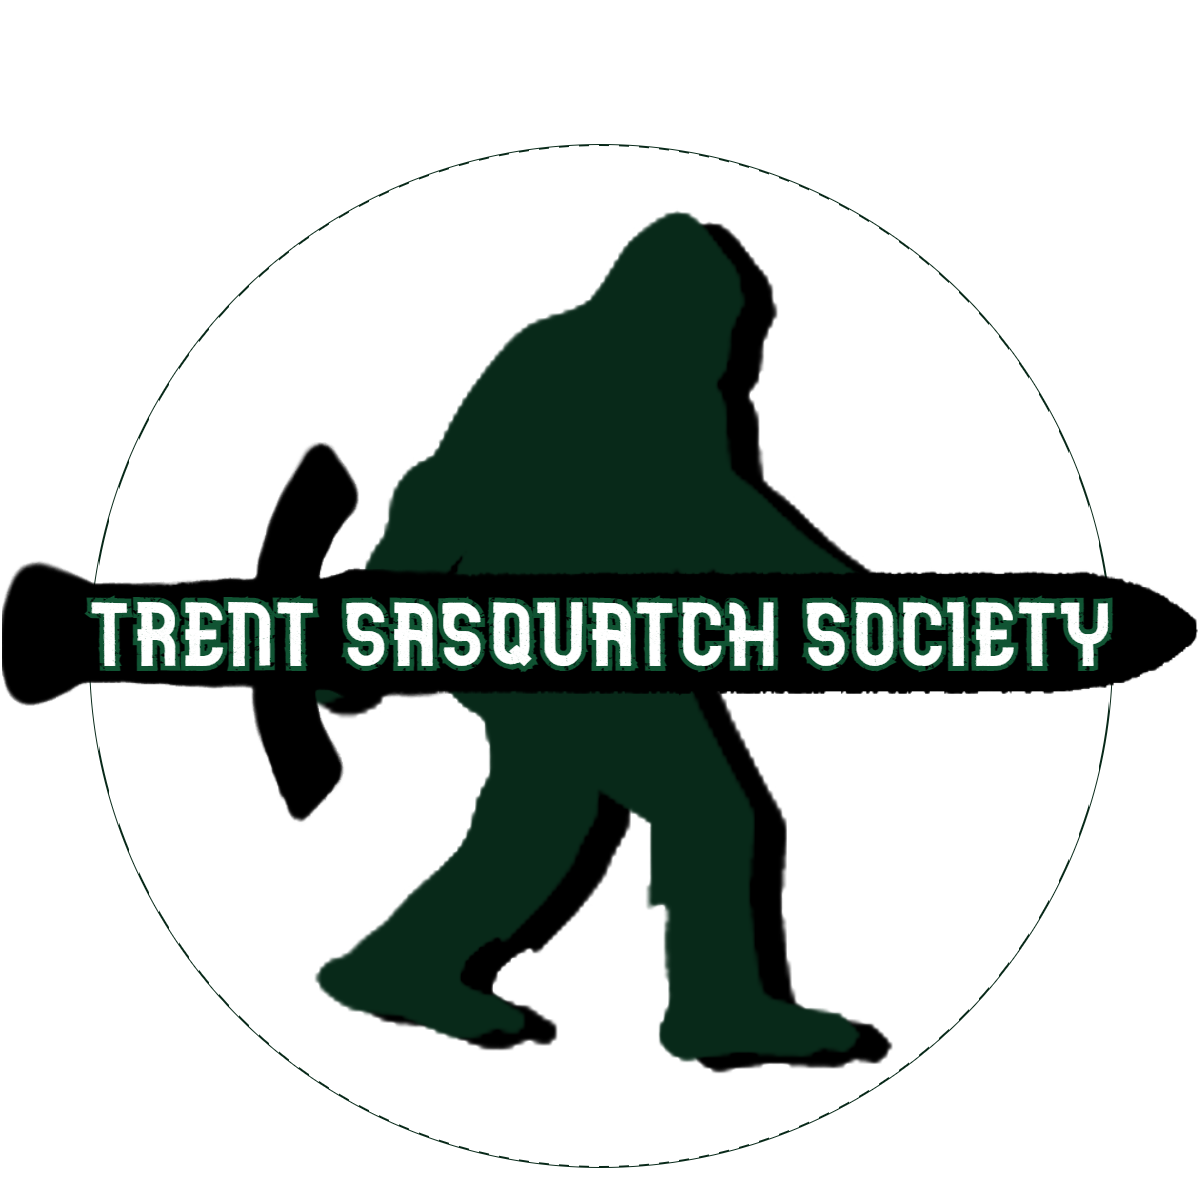 Trent Sasquatch Society